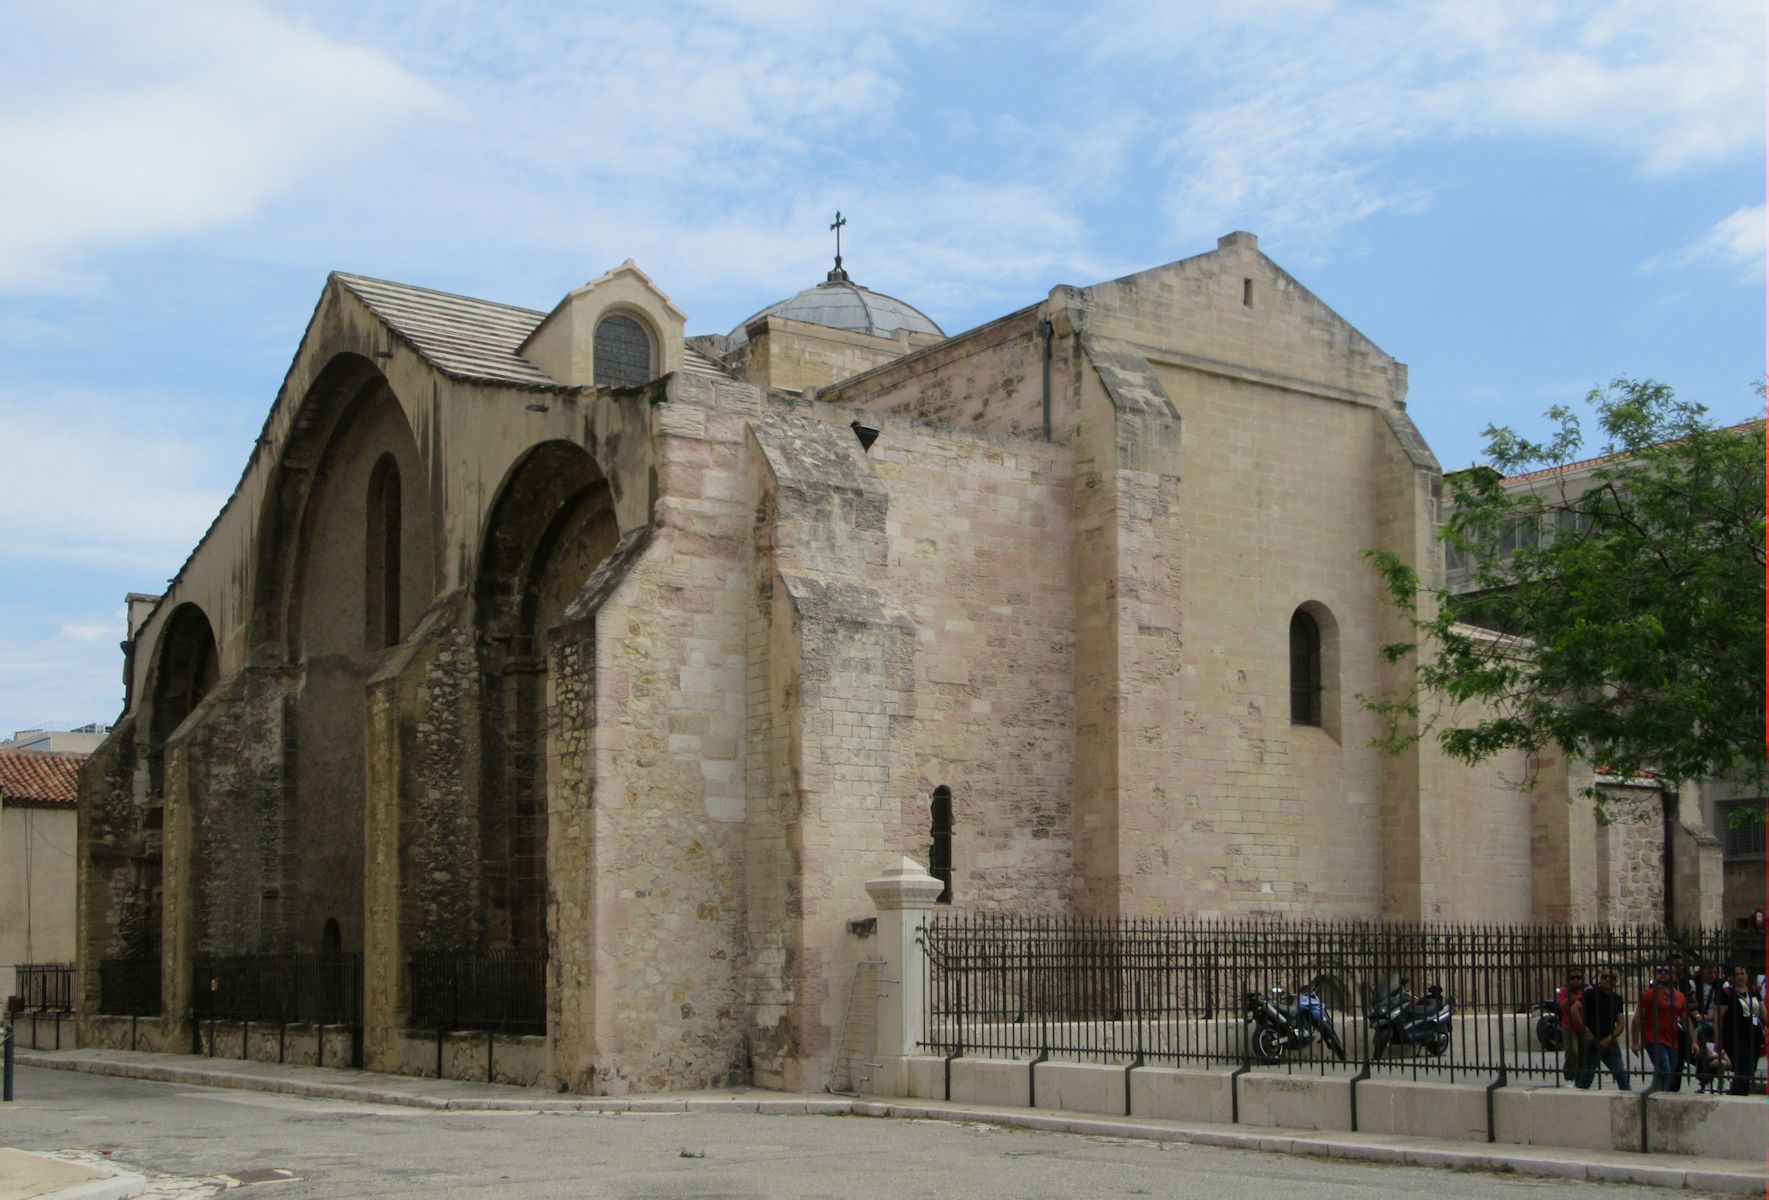 Reste der Kathedrale Vieille Majeure in Marseille, deren Kirchenschiff abgerissen wurde, um Platz für die neue Kathedrale Sainte-Marie-Majeure zu schaffen